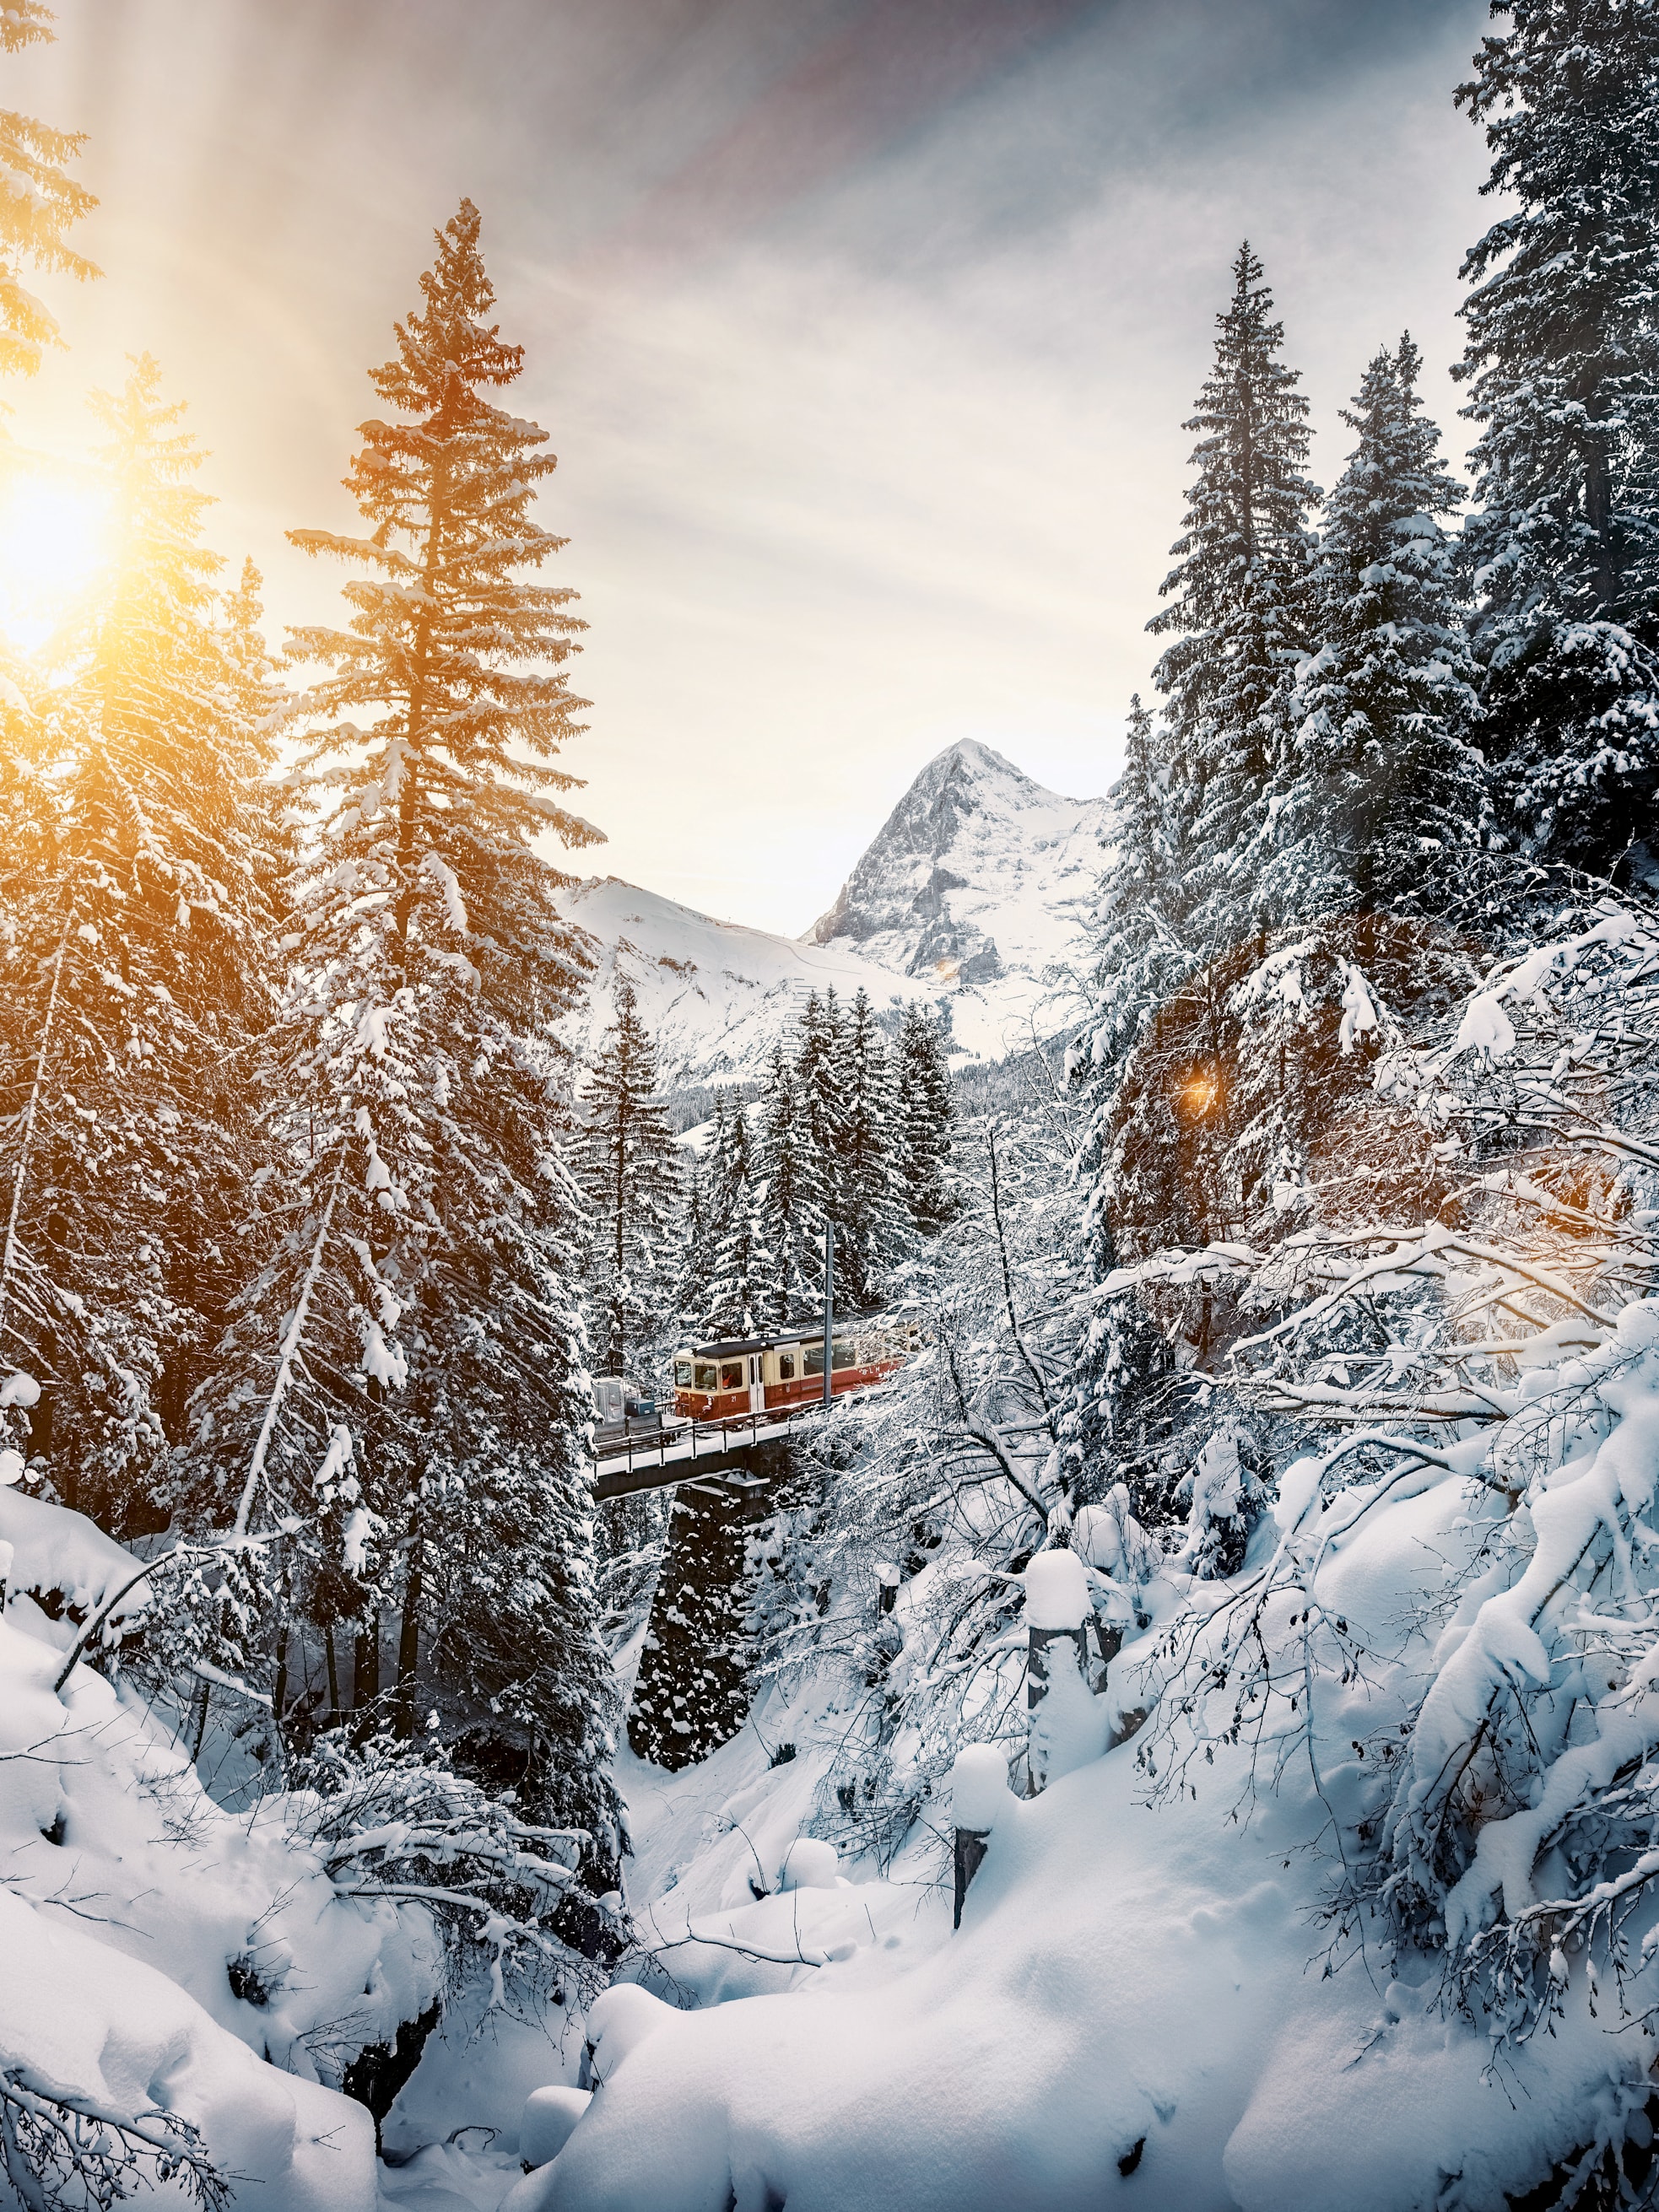 Bergbahn lauterbunnen muerren winter